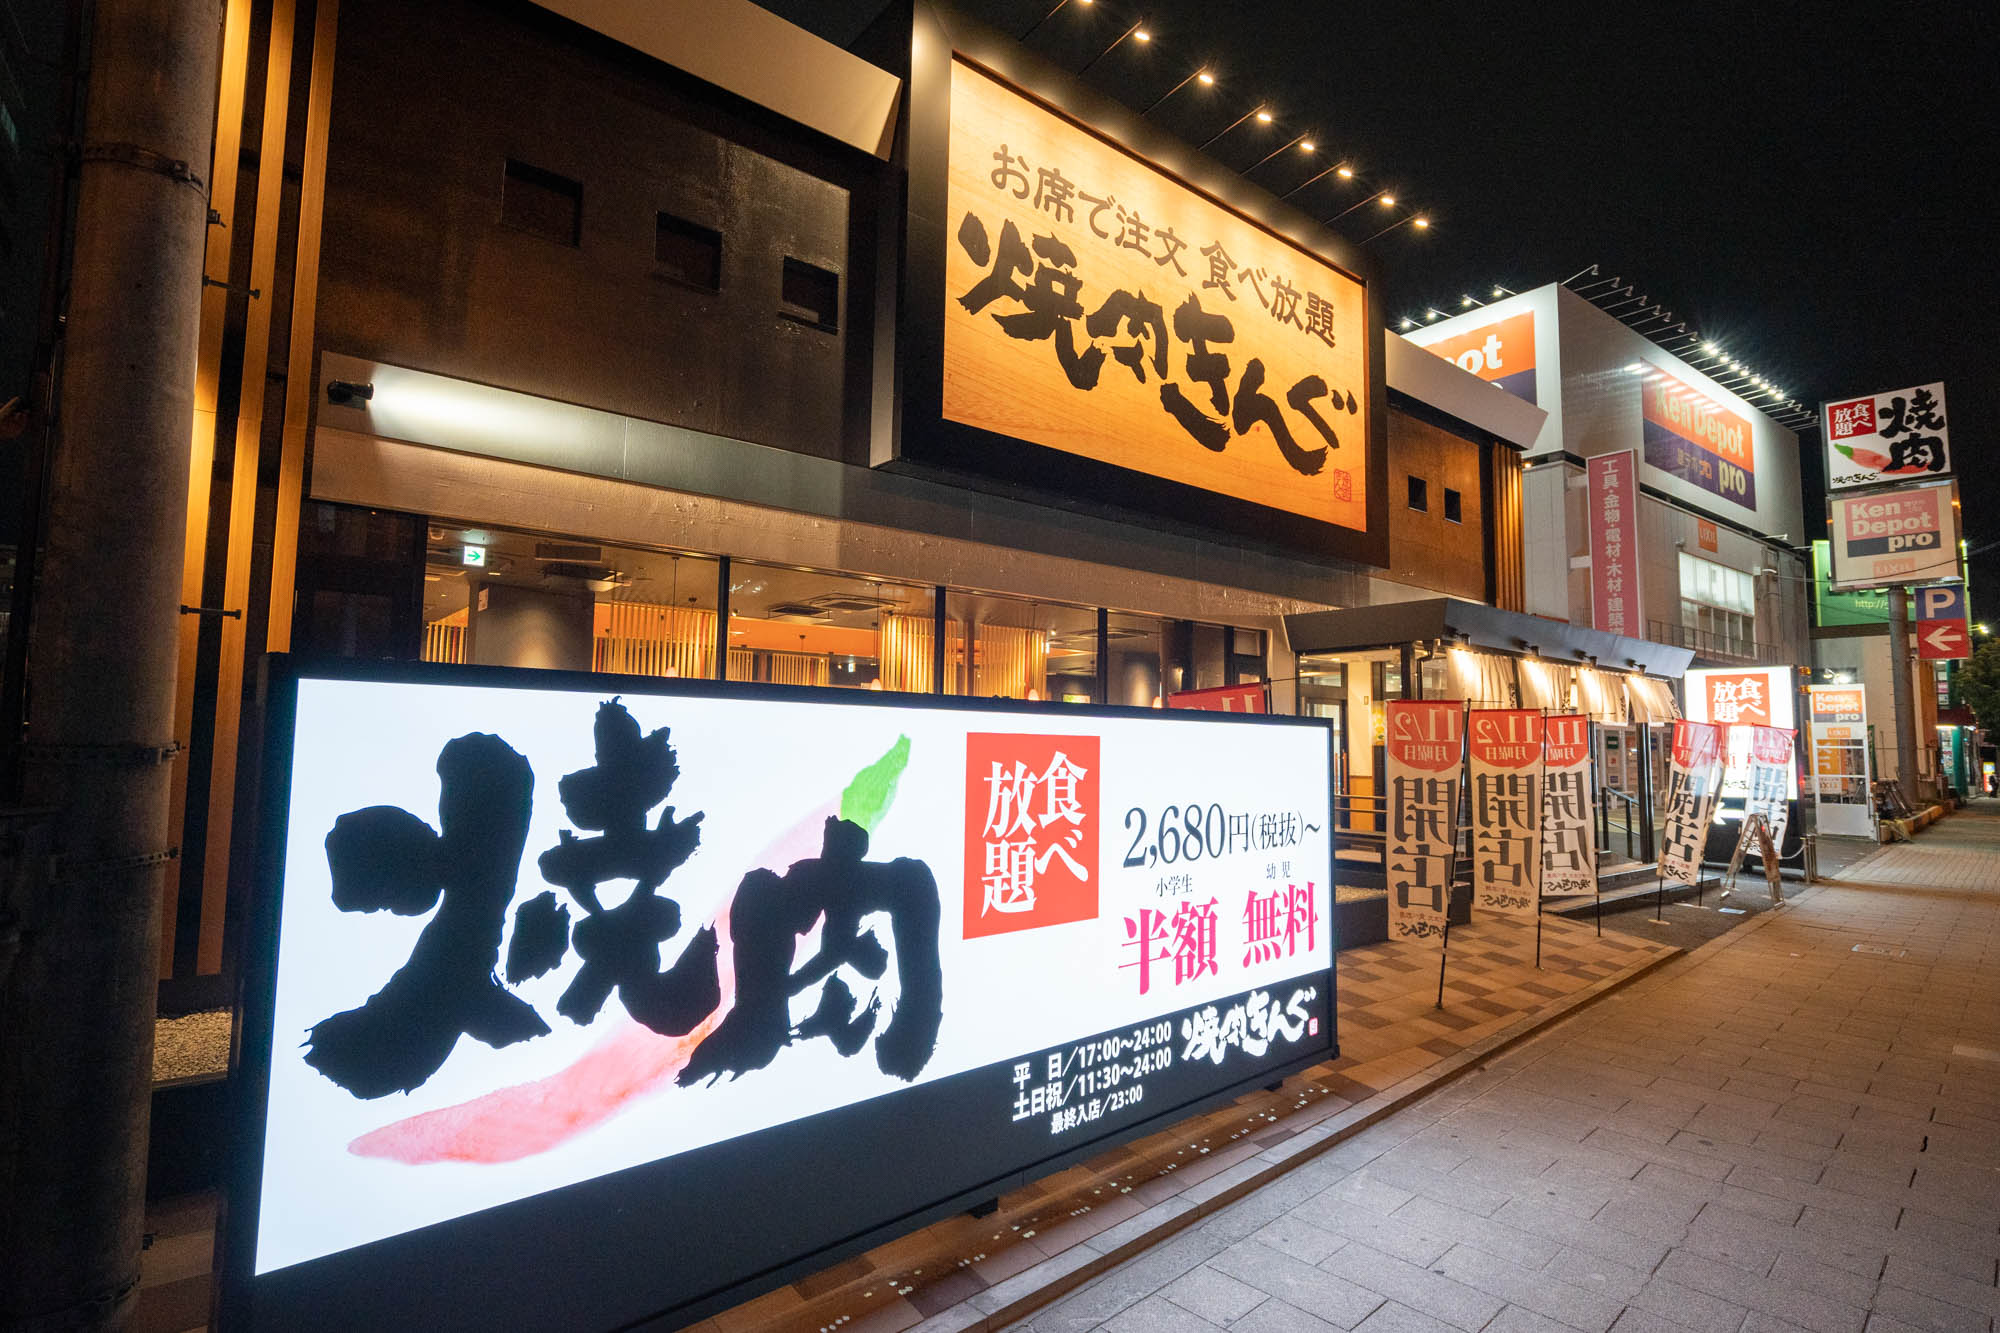 最強コスパで最高の焼肉パーティーを 焼肉きんぐ 大阪鶴見店